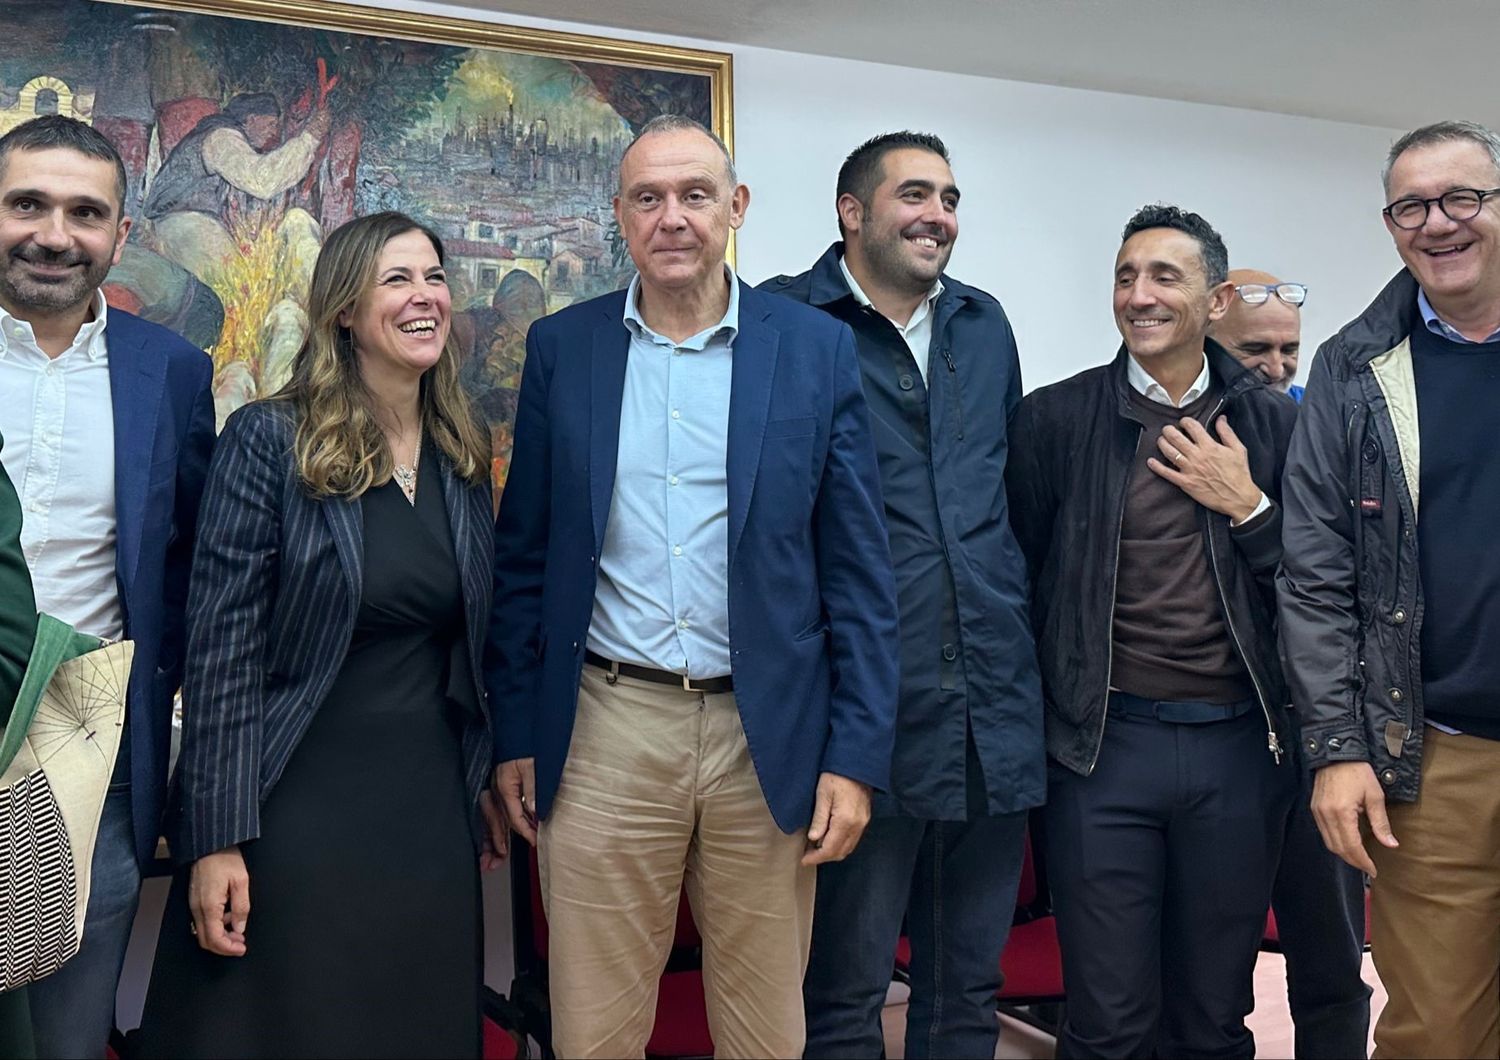 Alessandra Todde assieme ai rappresentanti della coalizione che l'ha indicata come candidata alla presidenza della Regione Sardegna